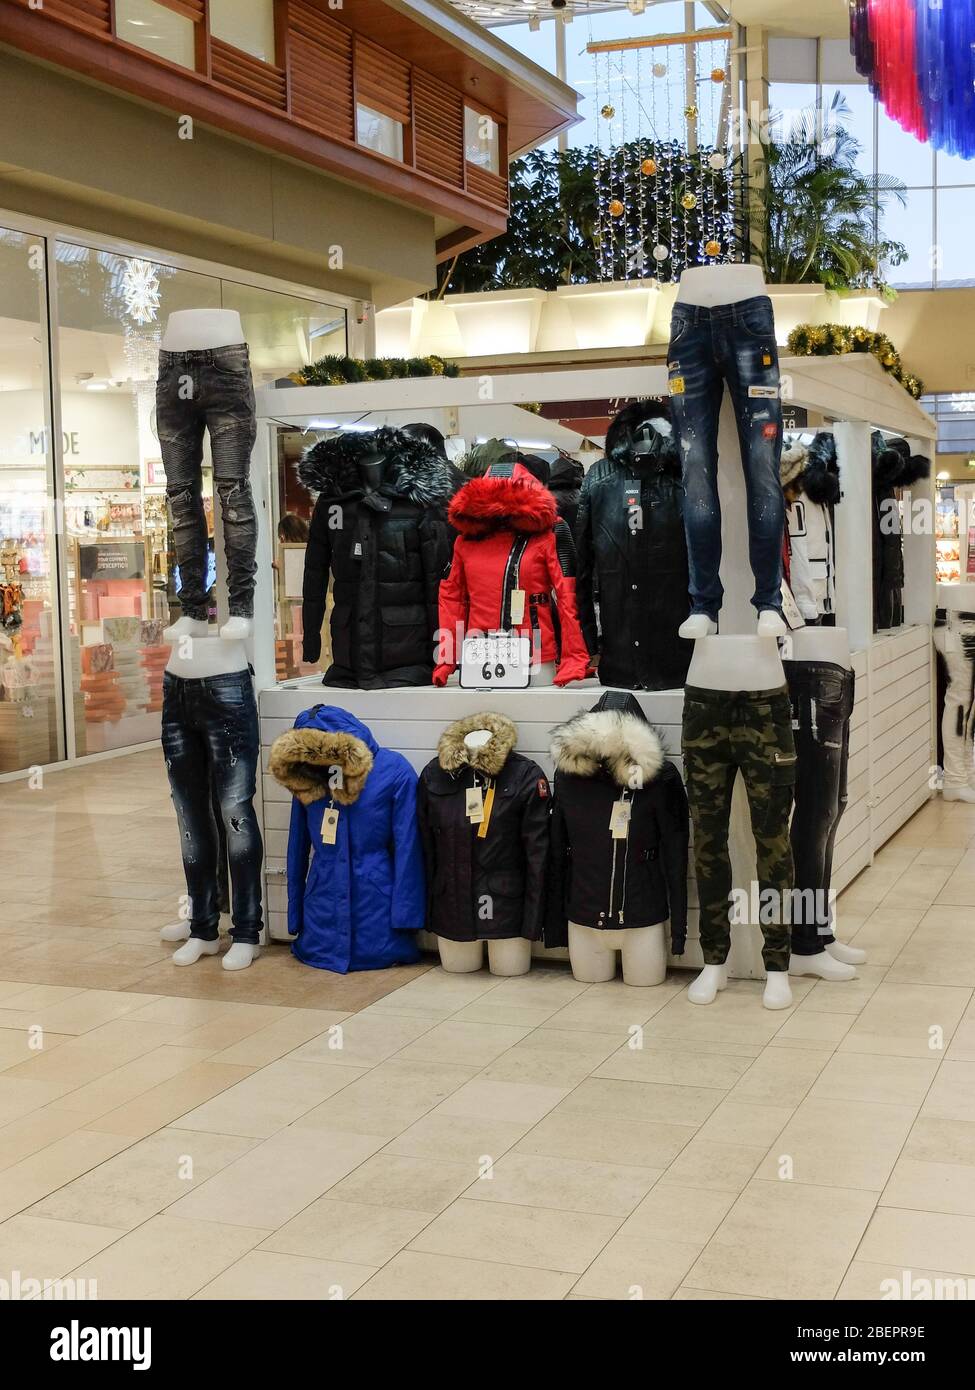 Marché des vêtements de petite taille : chandail, vestes, jeans, etc. Dans  un centre commercial Photo Stock - Alamy